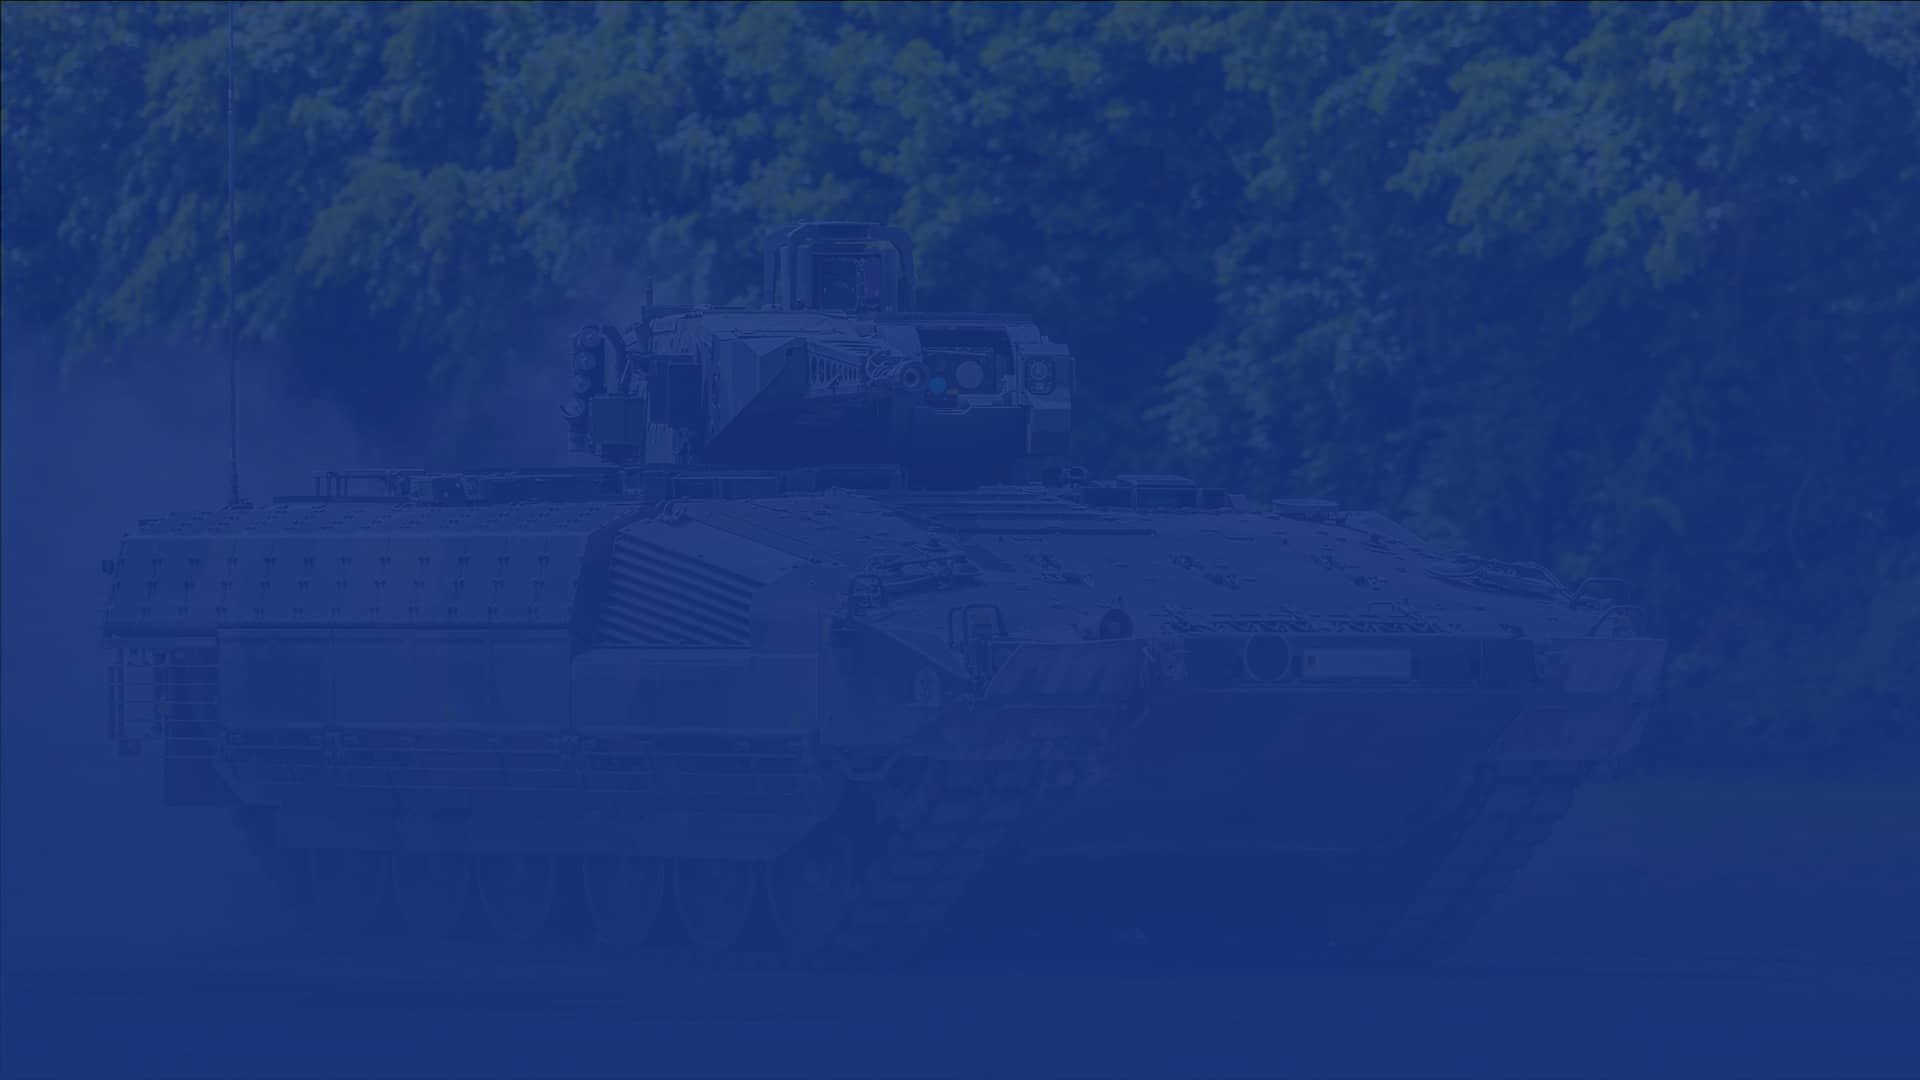 Ein Panzer mit einem blauen Filter welcher für Sicherheit und Technik steht